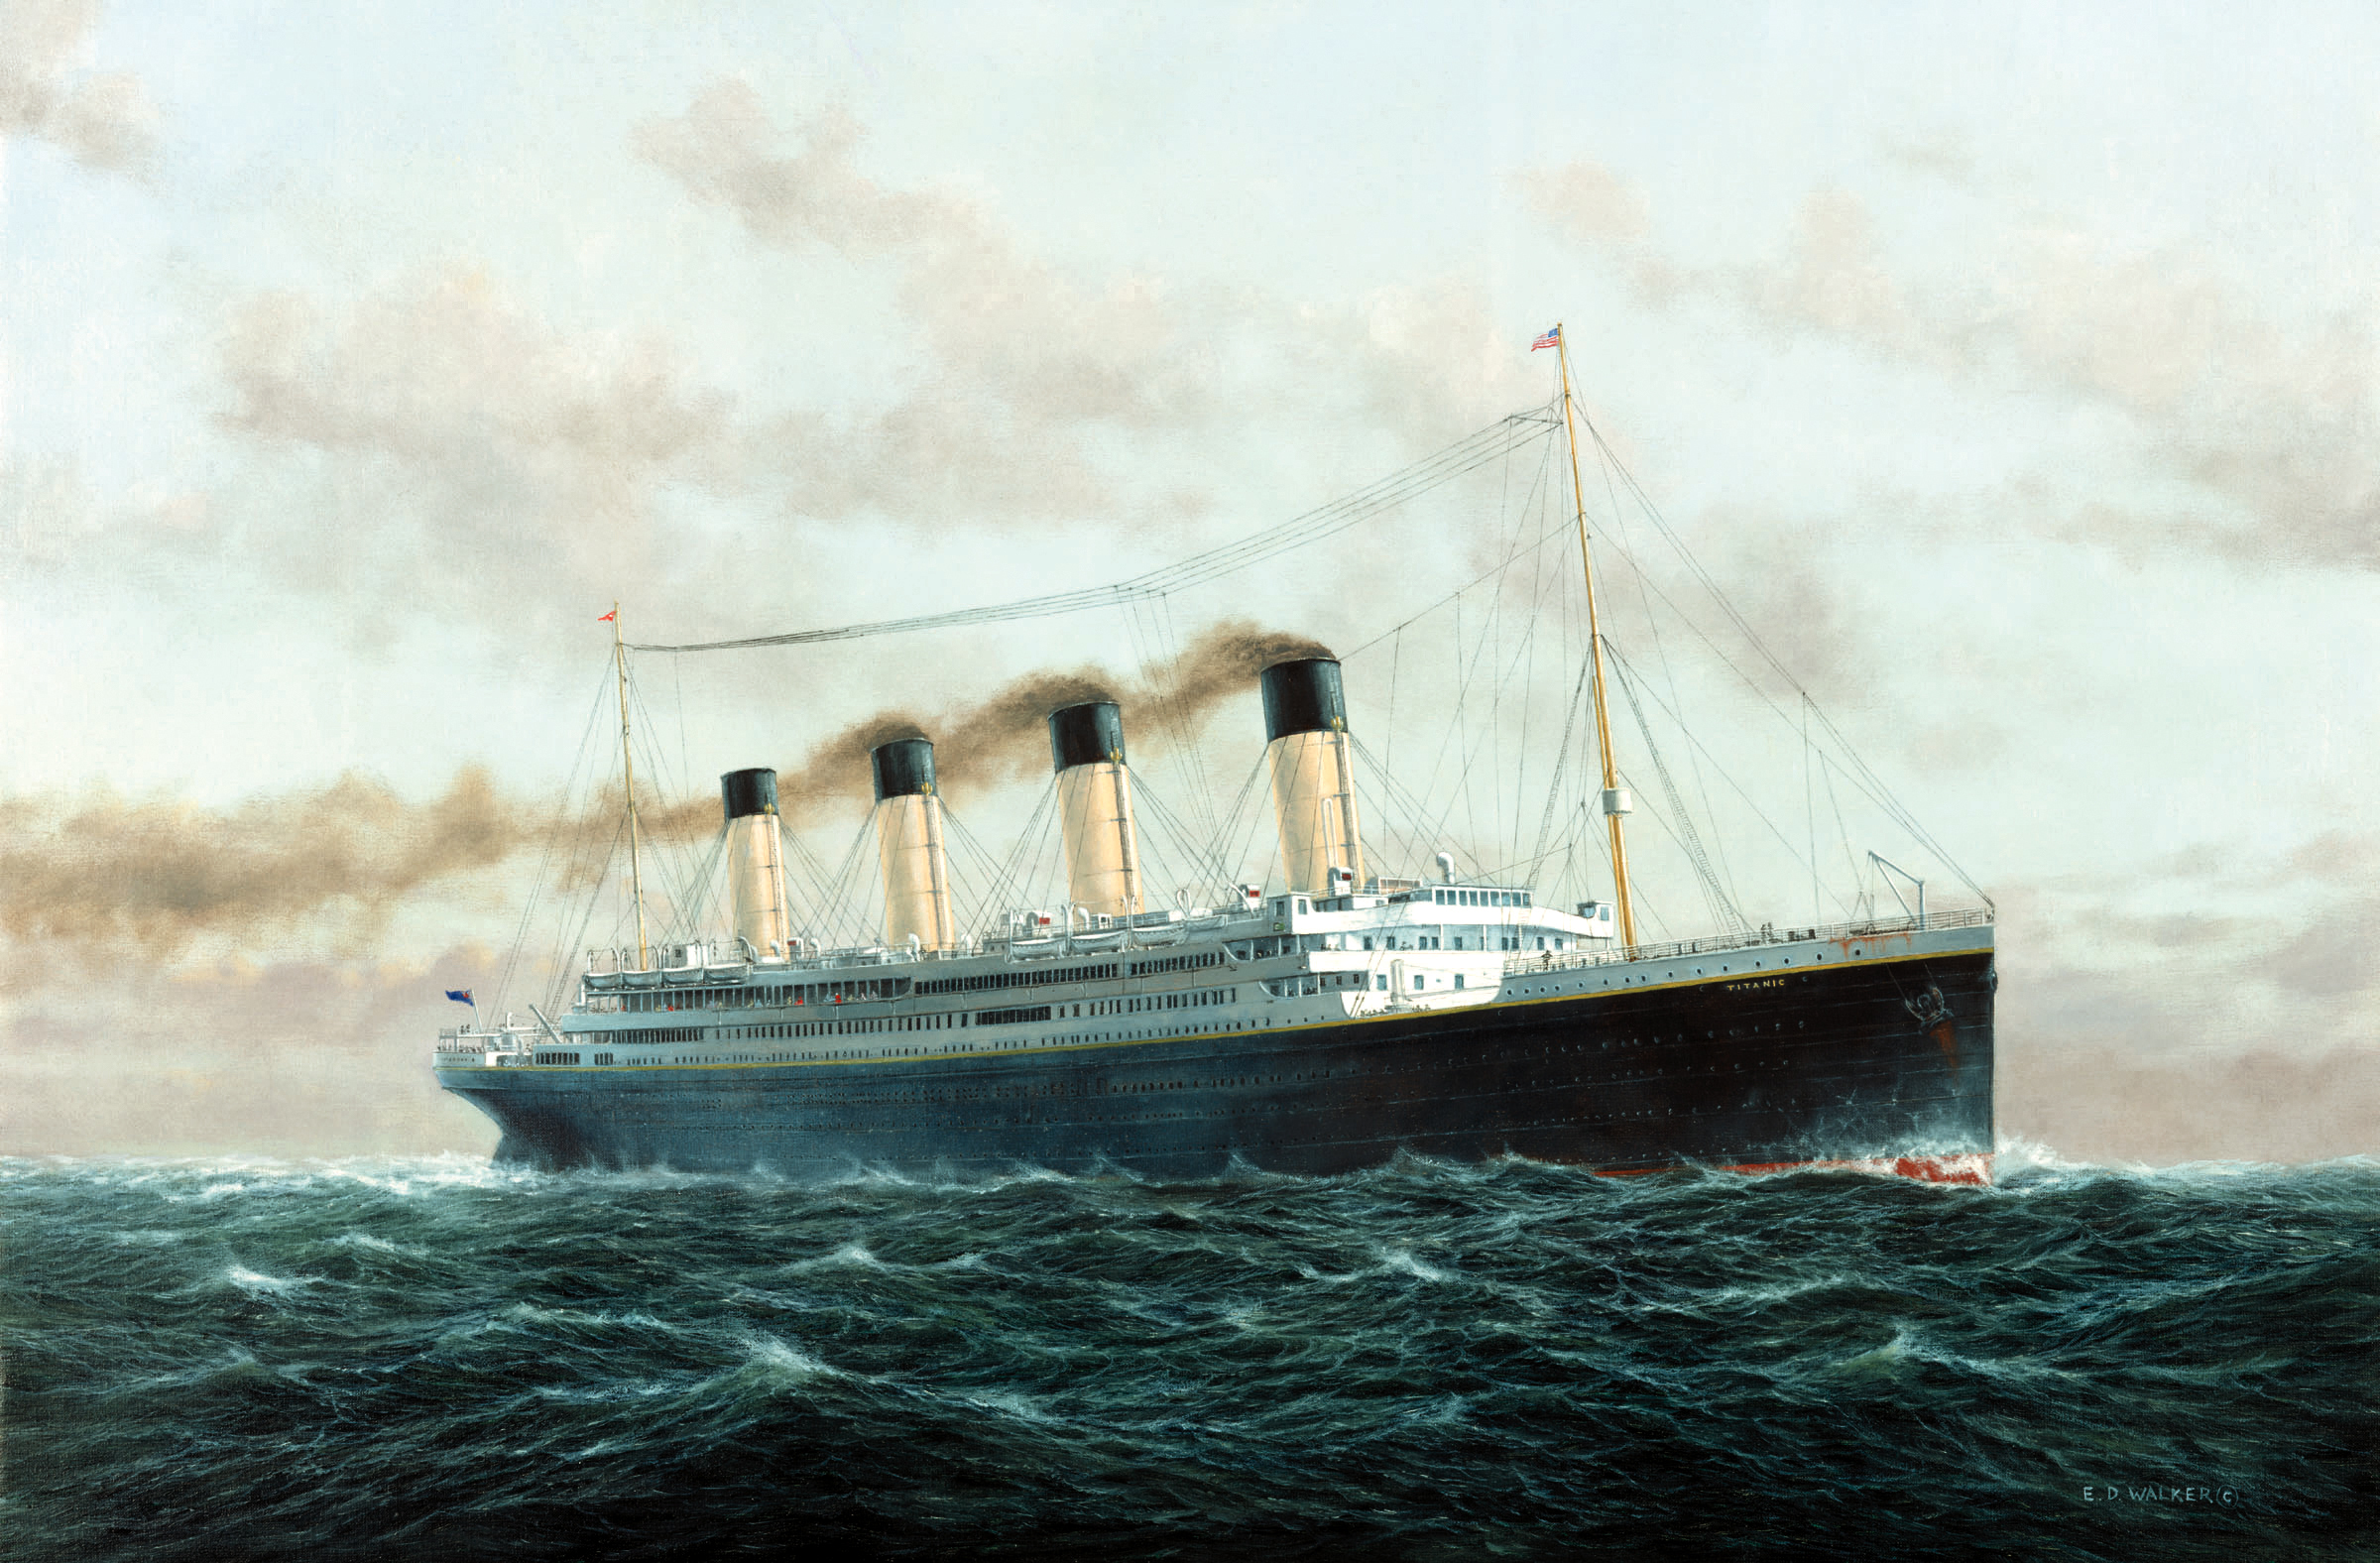 Titanic HD Wallpaper